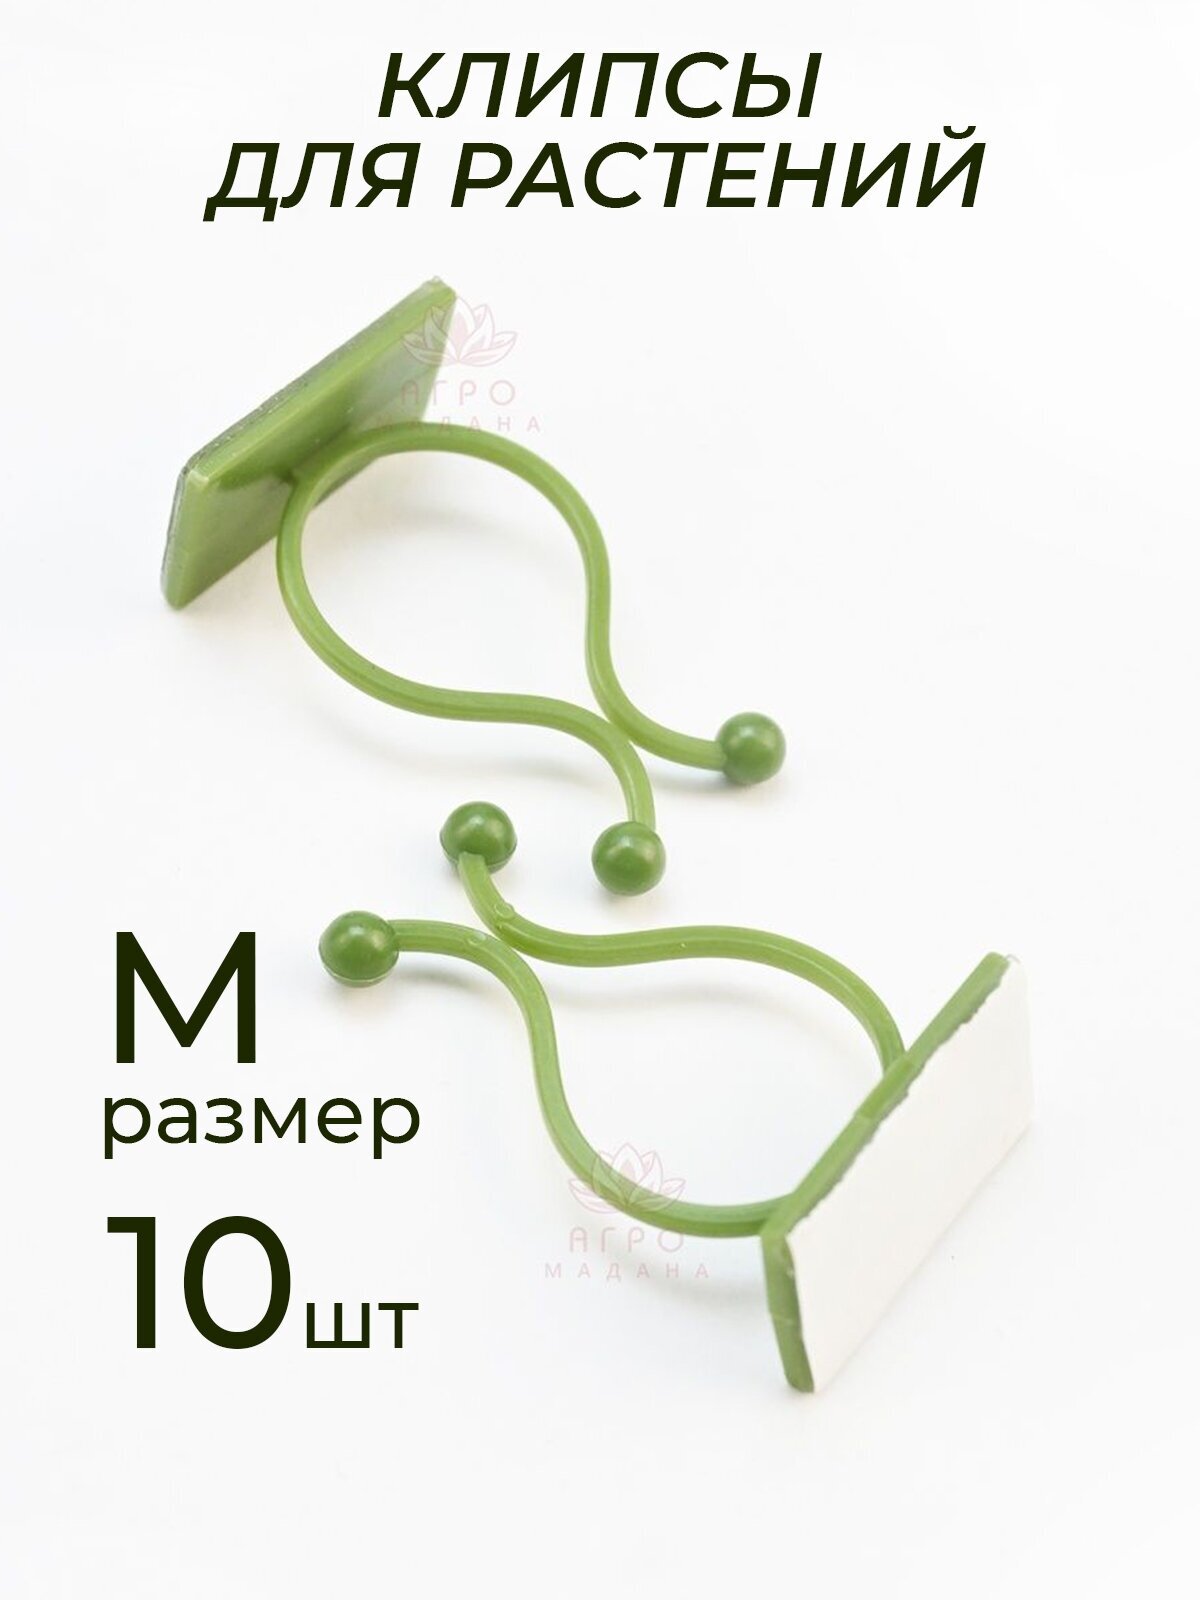 Клипсы для подвязки растений, крючки самоклеящиеся для лиан, держатель для проводов на липучке, зеленый, размер M, 10шт - фотография № 1